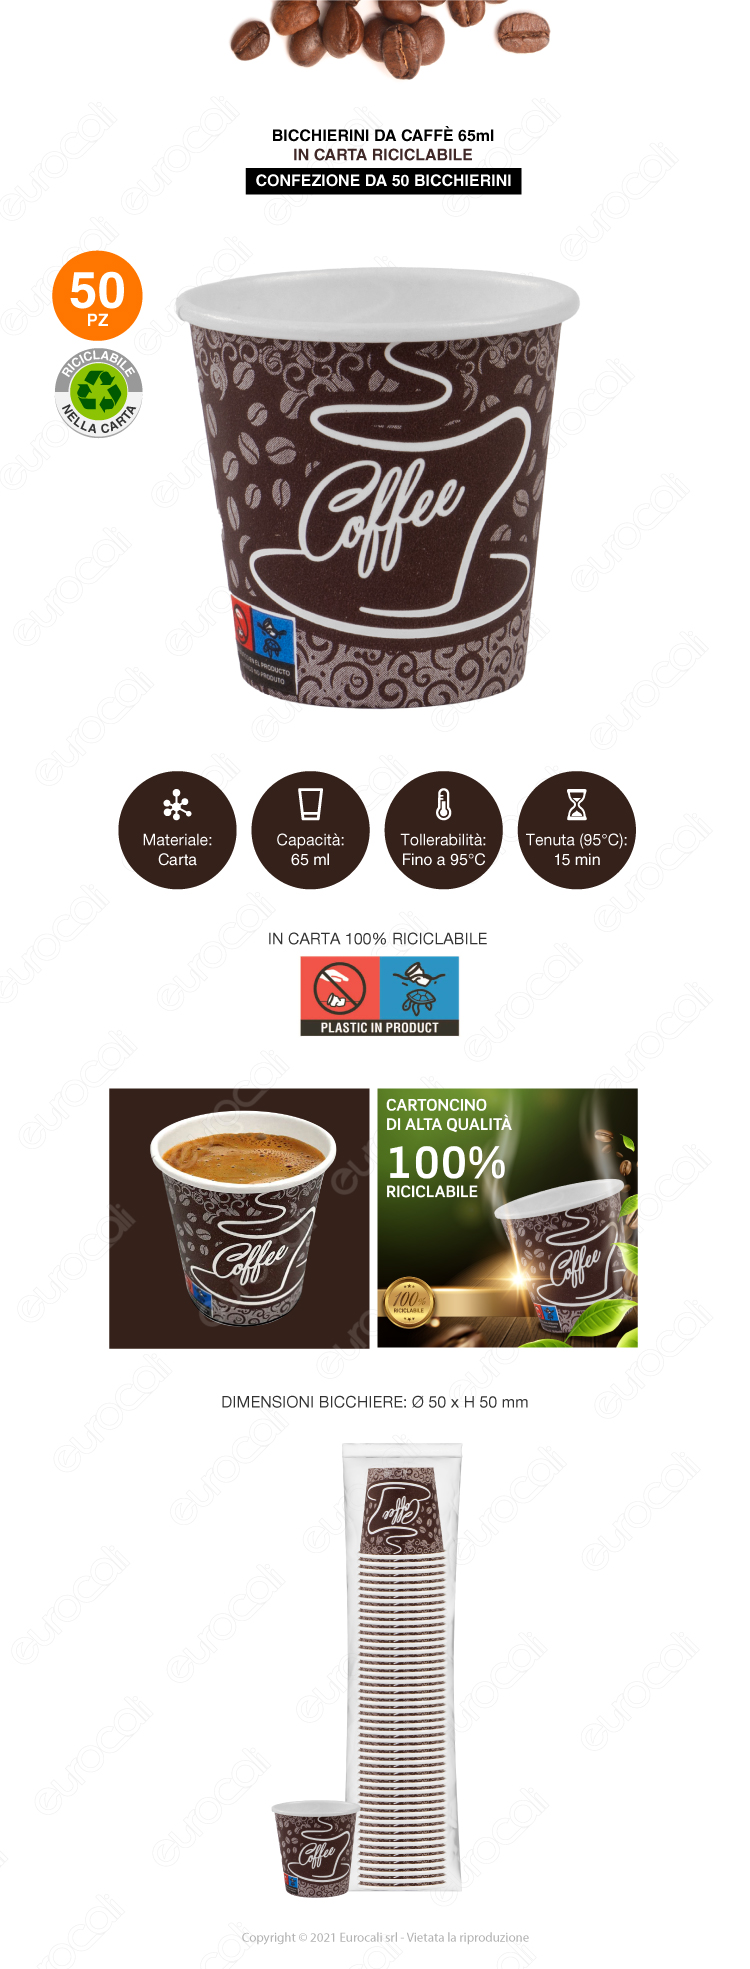 biccheri caffè in carta 50x coffee